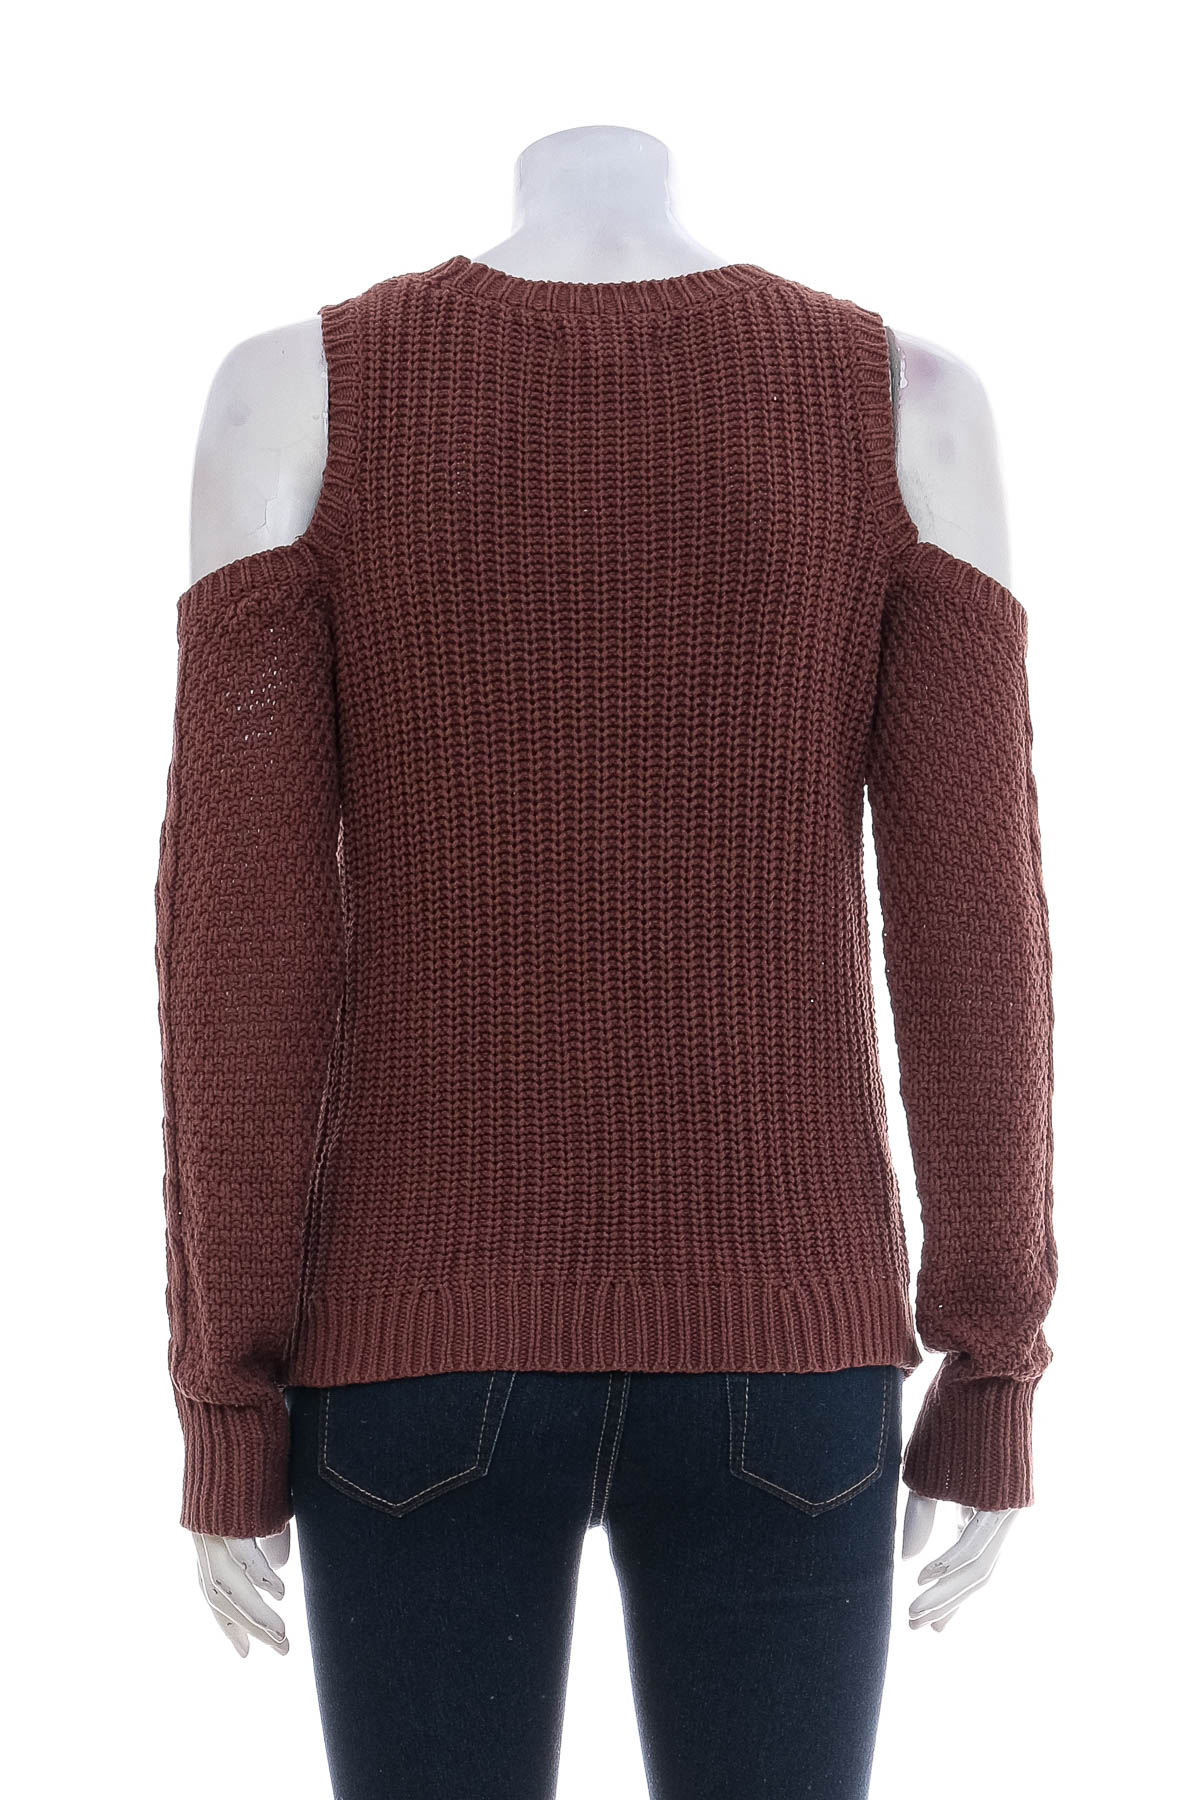 Women's sweater - Aeropostale - 1